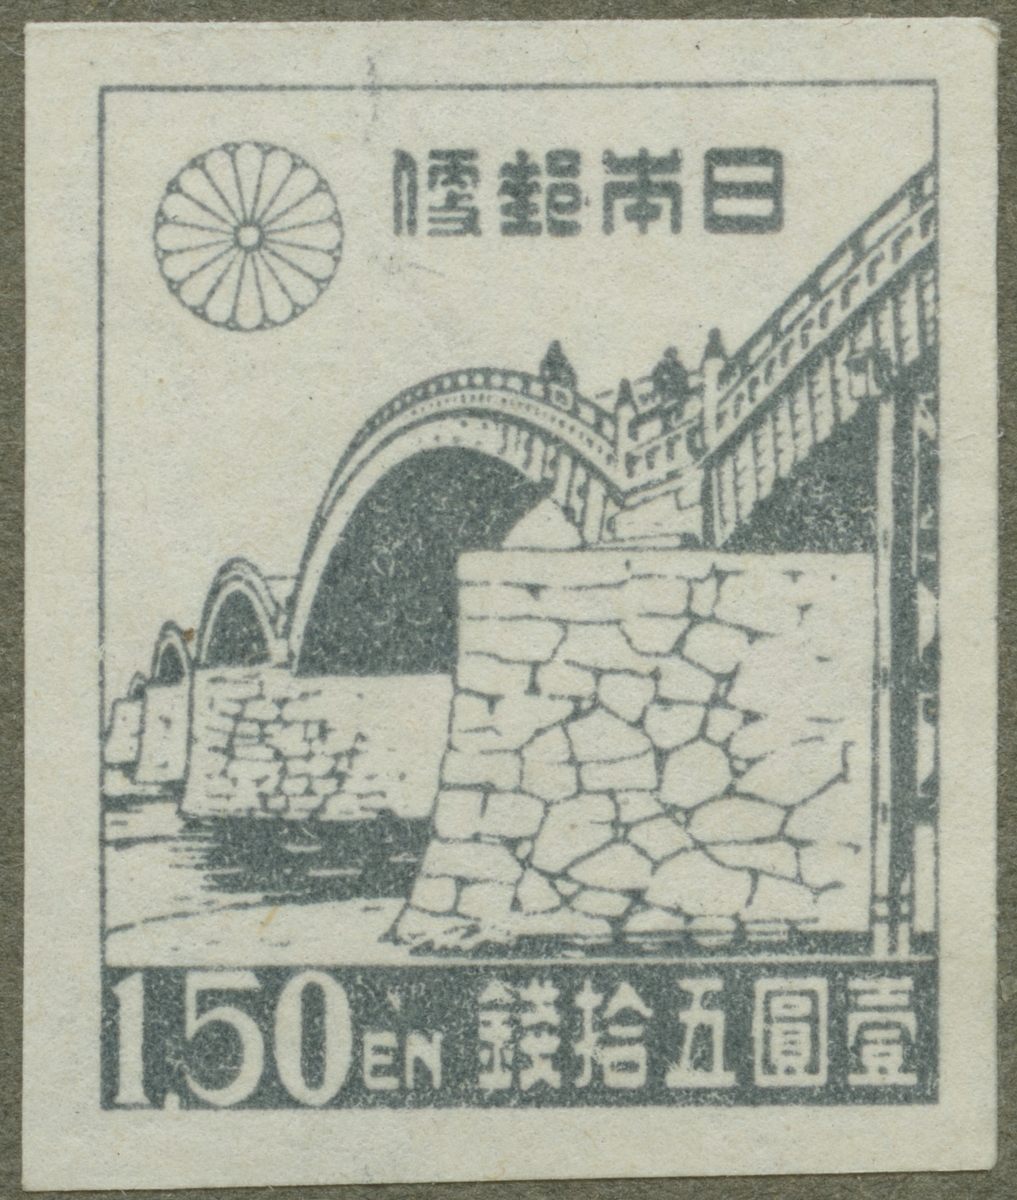 Frimärke ur Gösta Bodmans filatelistiska motivsamling, påbörjad 1950.
Frimärke från Japan, 1946. Motiv av Kintai-bron: Japan.